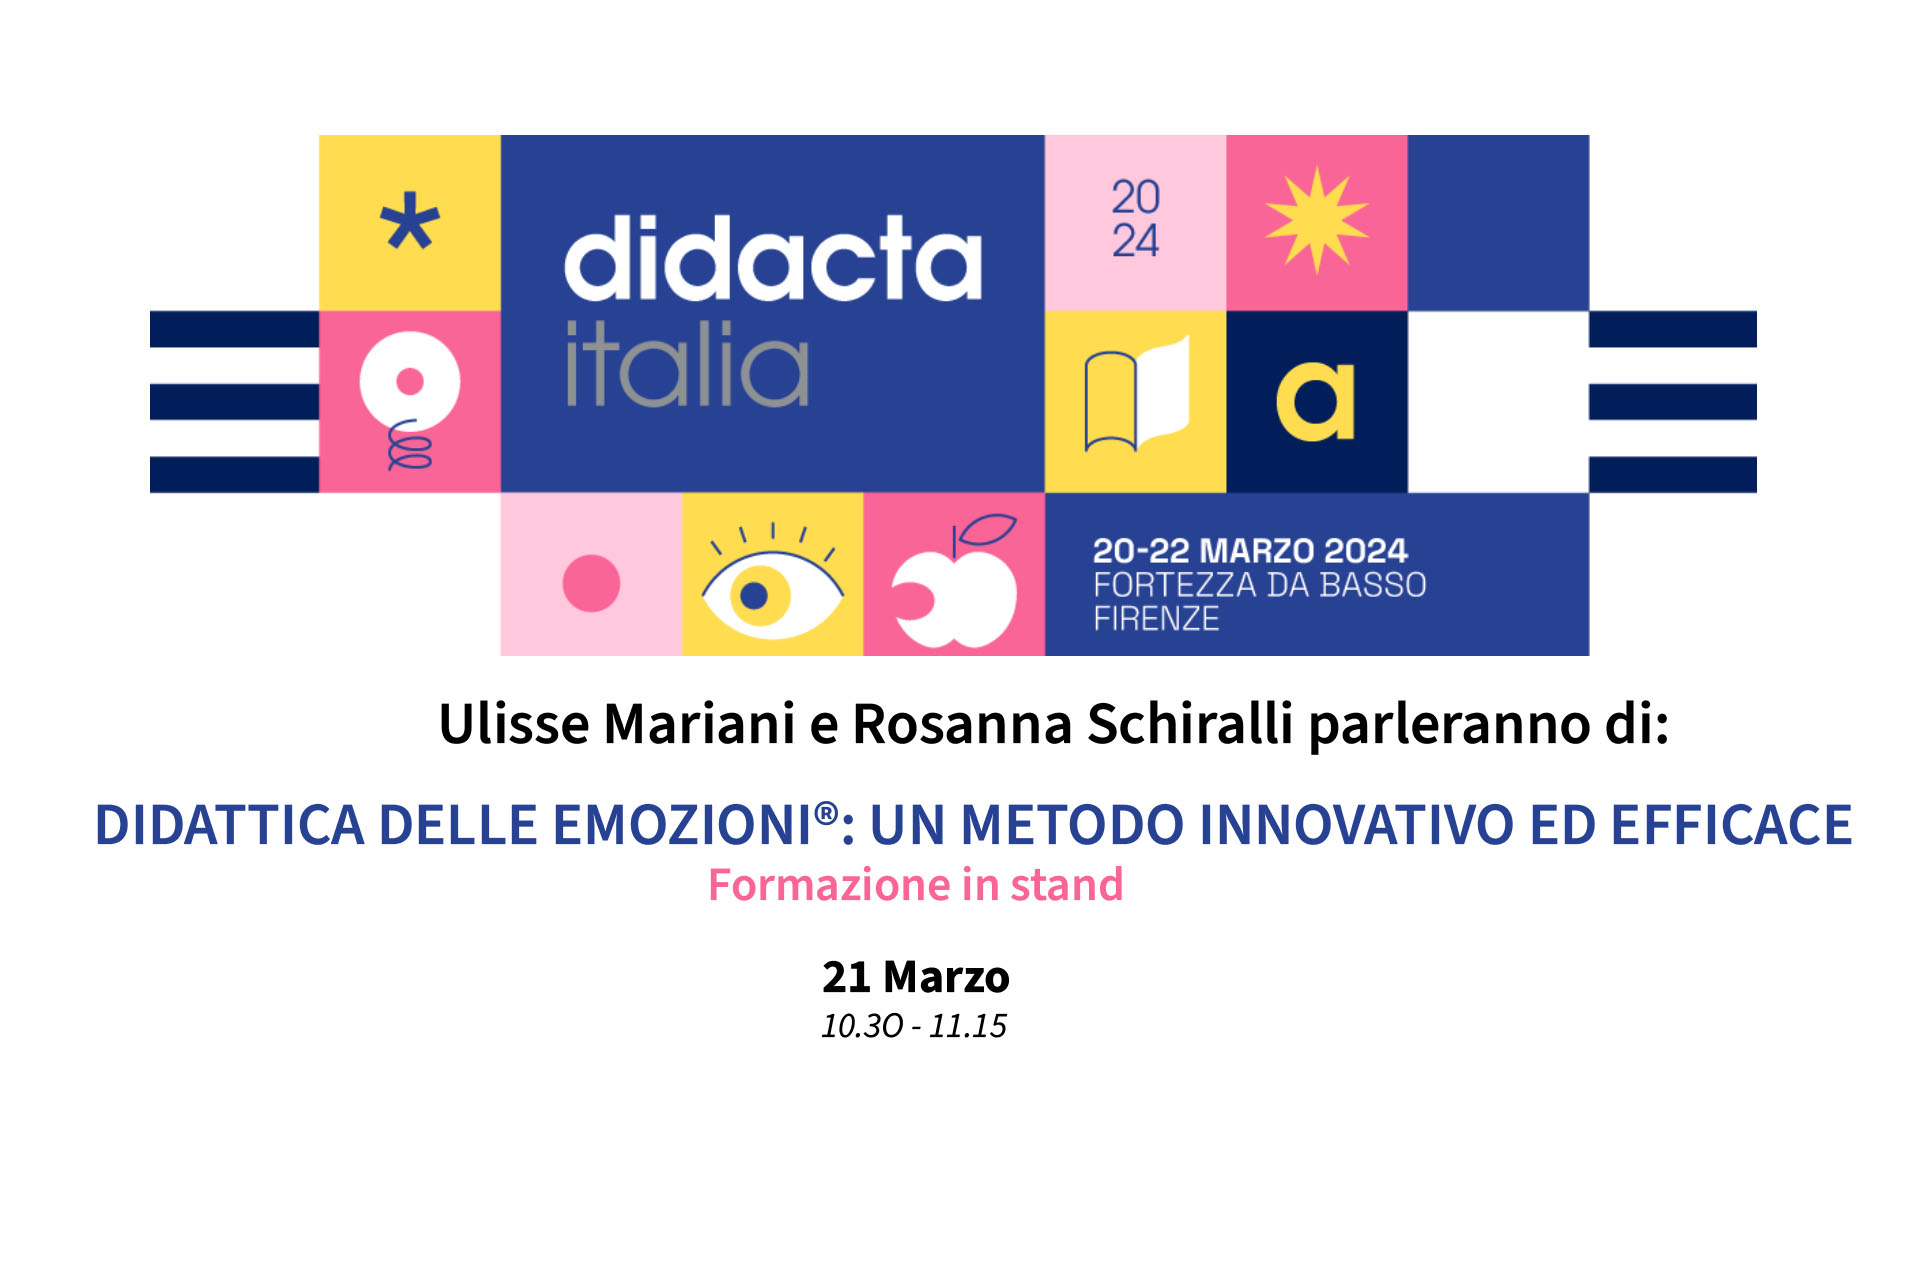 Didacta Italia 2024 - Didattica delle Emozioni® - Ulisse Mariani e Rosanna Schiralli